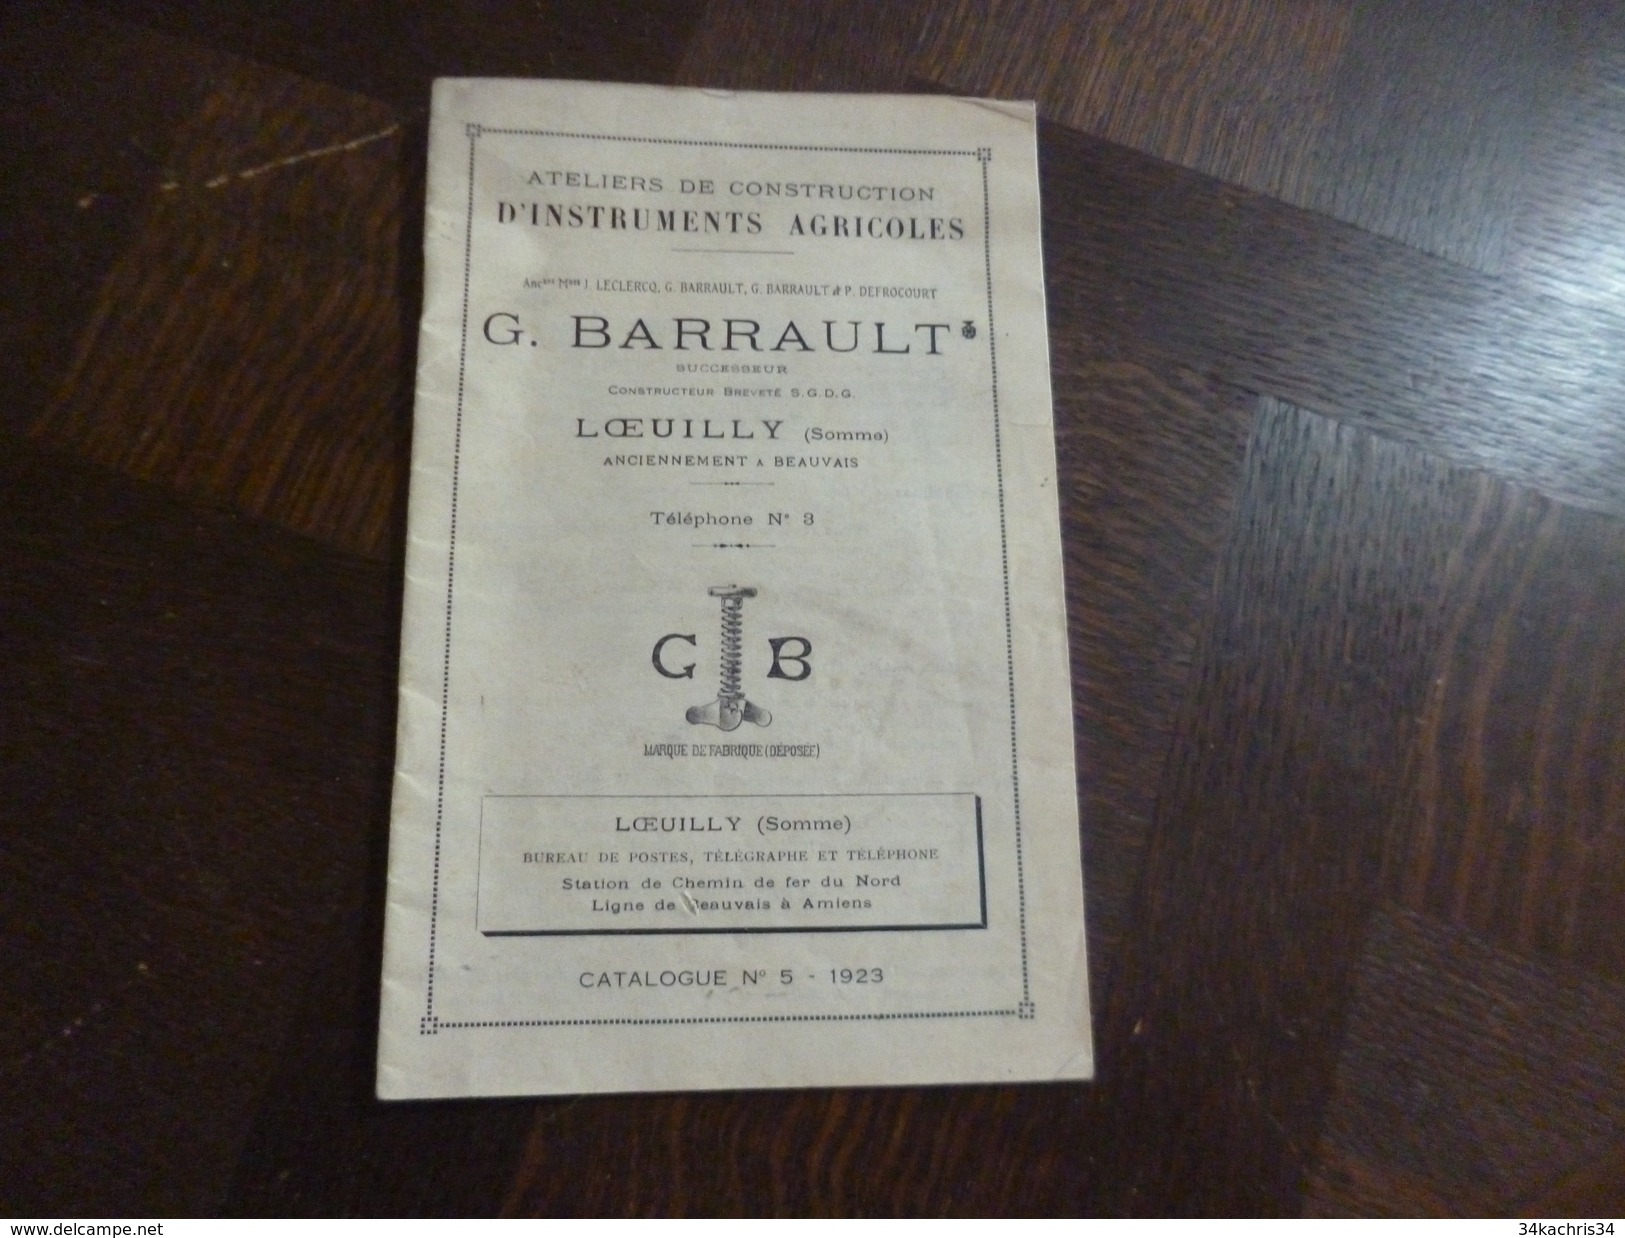 Olaquette Publicitaire Pub Tarifs Illustrée G.Barrault LOeully Somme Instruments Agricoles Agriculture 29 P - Agriculture